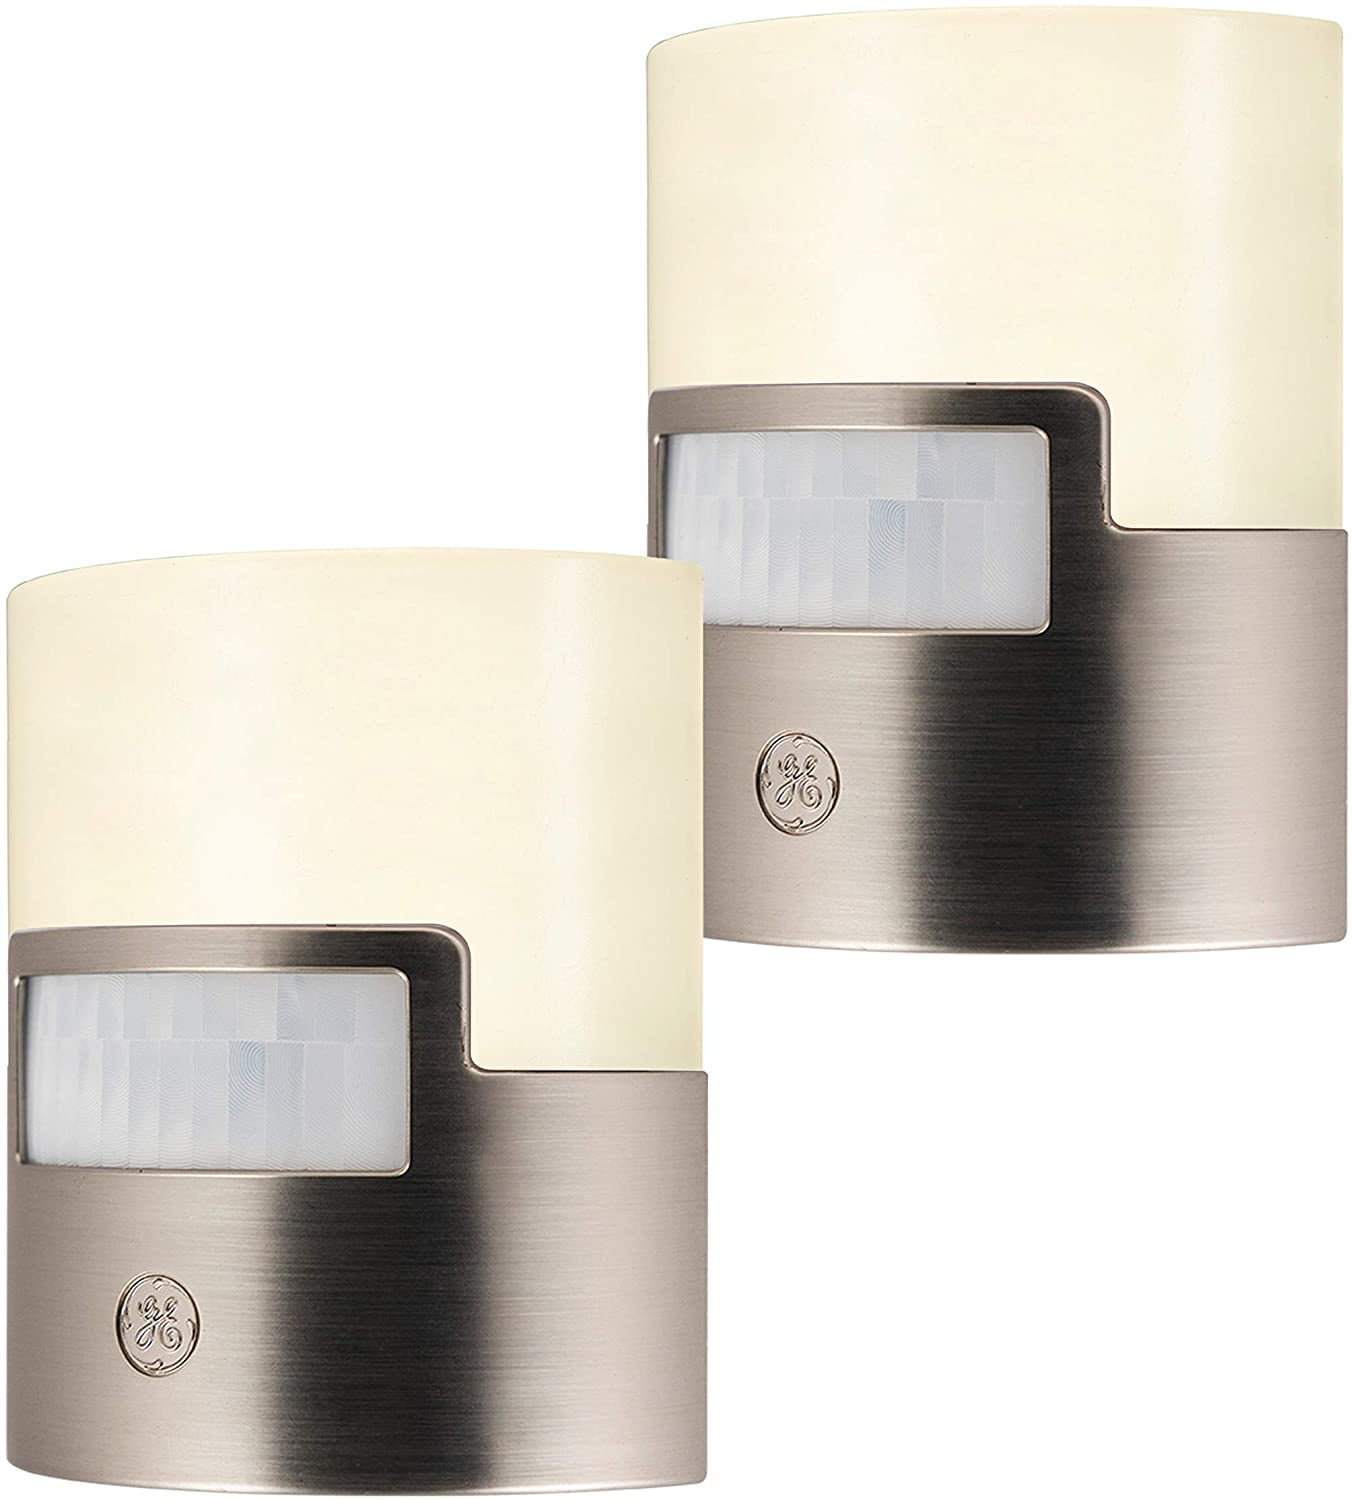 40 Lumens Plug-In 2 Pack Motion Sensor Soft W Ge Enbrighten Led Night Light 